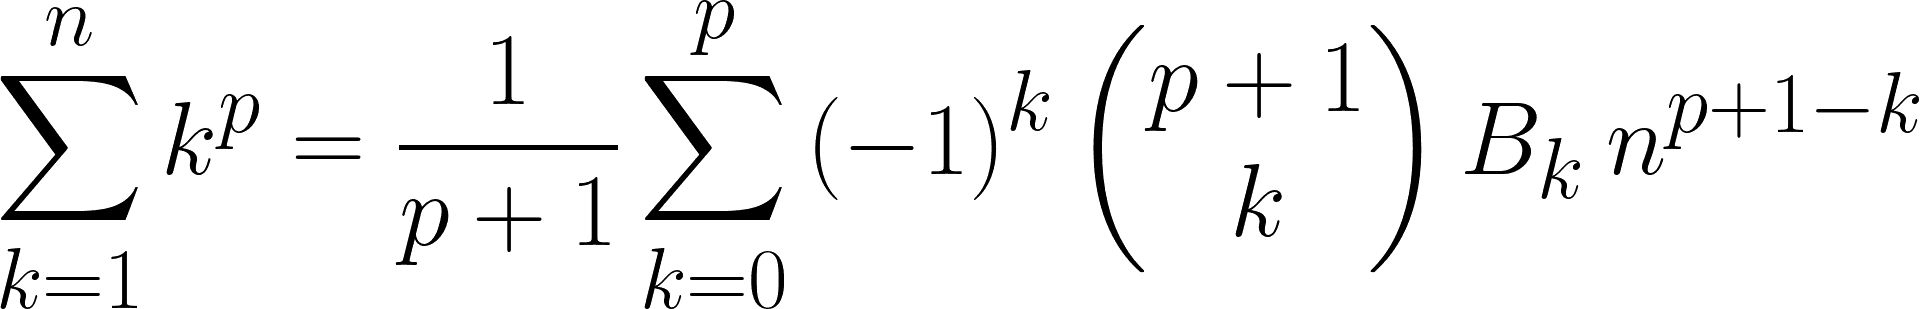 Formel zur Addition der ersten n Zahlen zur k-ten Potenz